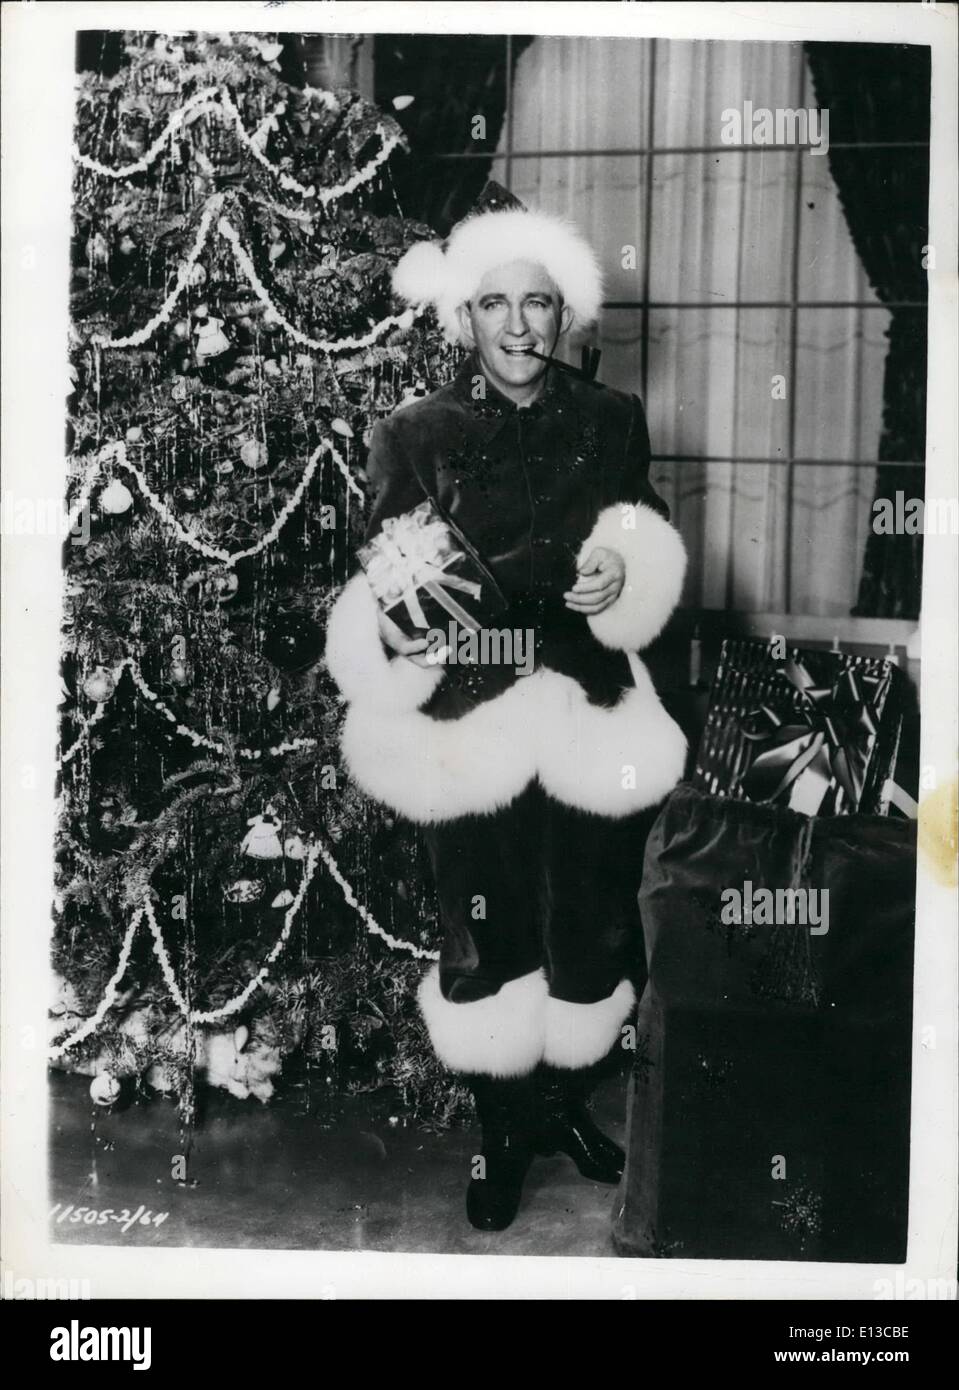 Febbraio 29, 2012 - Crooner in un nuovo ruolo. Santa Bing! Sebbene egli abbia erogato con la barba tradizionali - crooner Bing Crosby fa un meraviglioso di Babbo Natale. Egli è visto in vestiti che indossa nel nuovo film ''Bianco Natale'' - che viene realizzato in VistaVision - Hollywood. Foto Stock